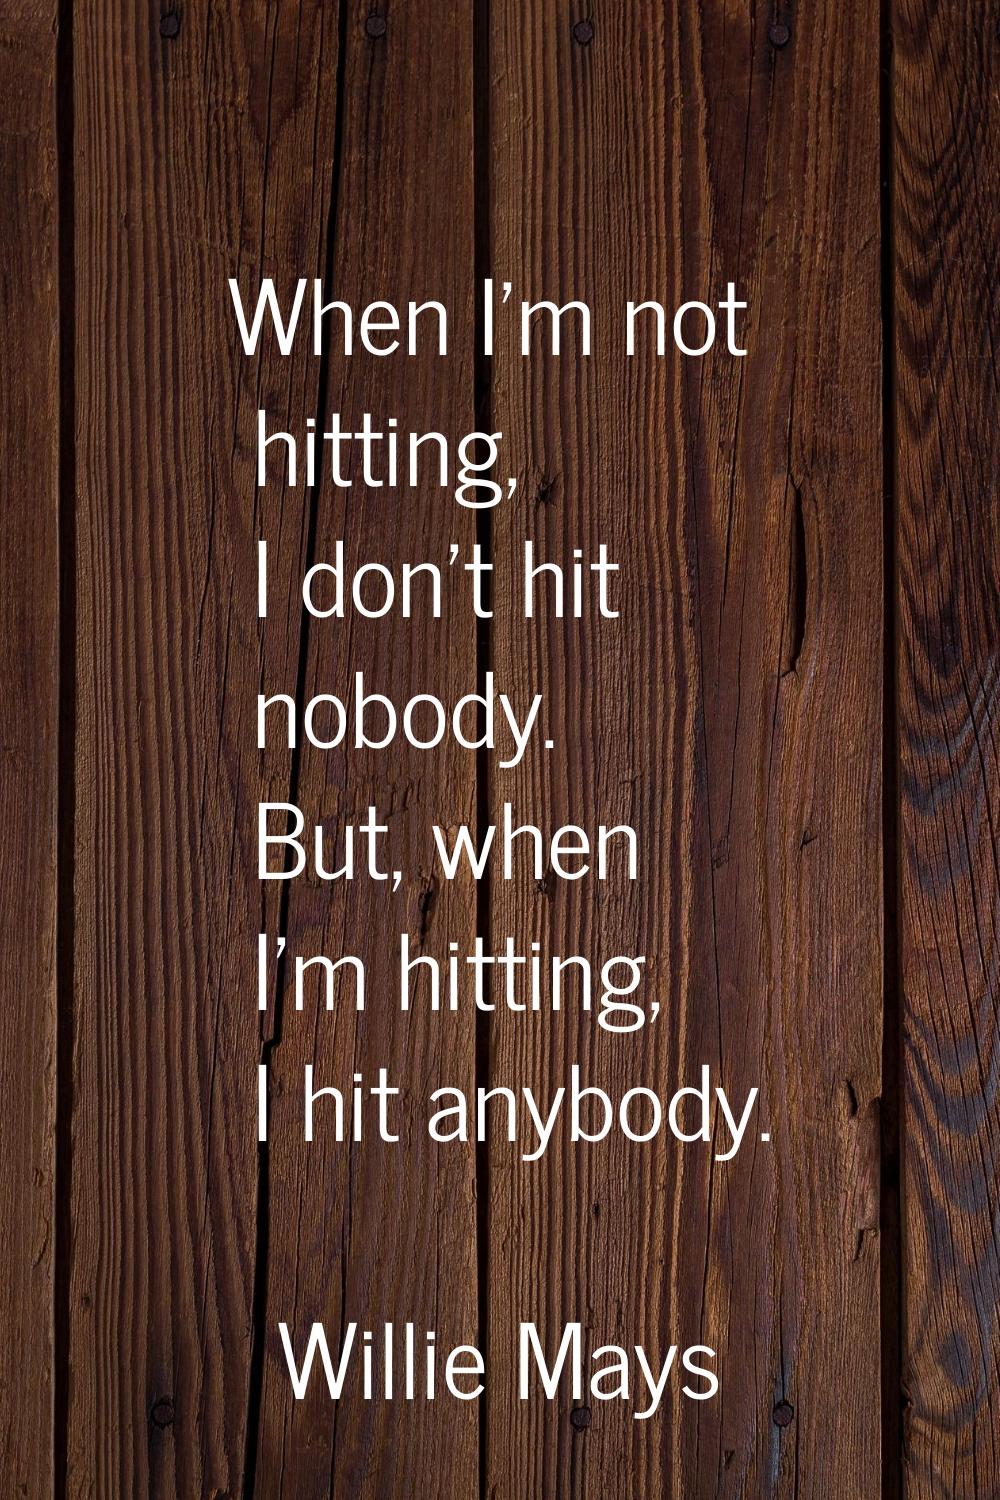 When I'm not hitting, I don't hit nobody. But, when I'm hitting, I hit anybody.